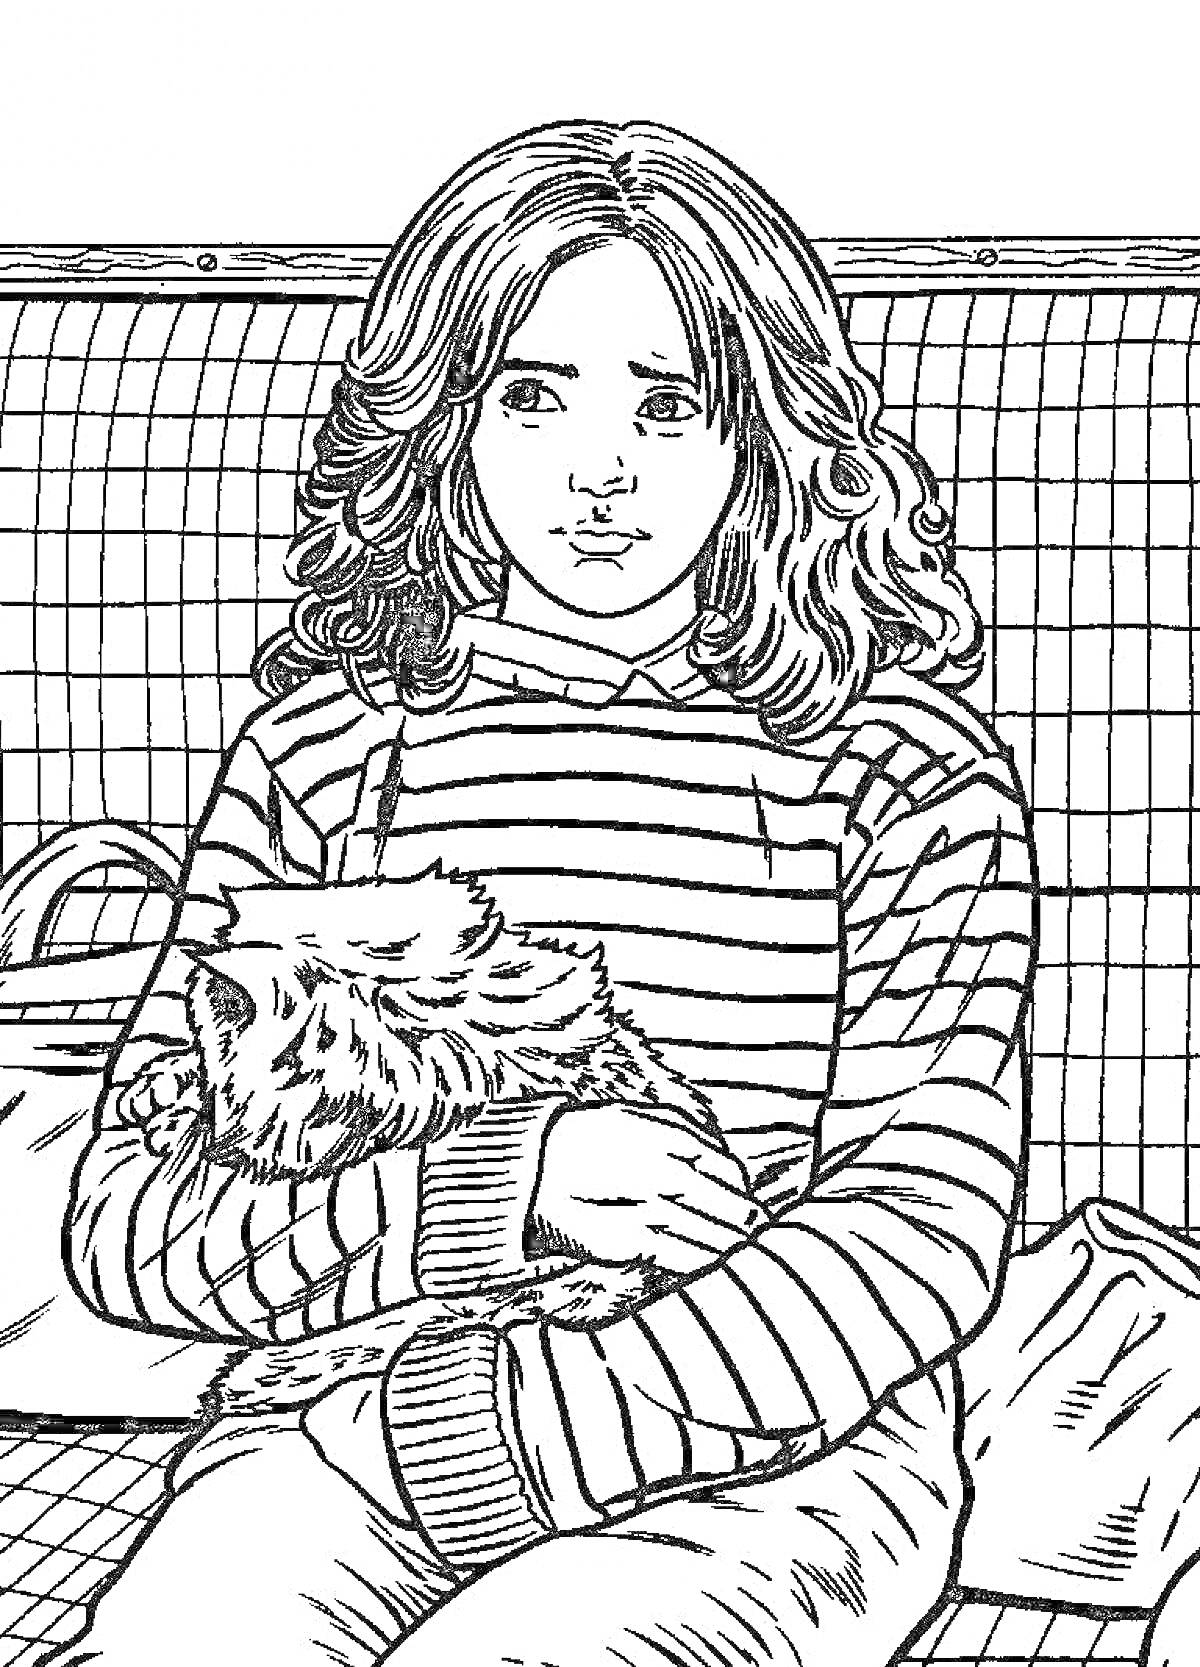 Девочка с длинными волосами в полосатом свитере, держащая пушистого кота, на фоне клетки